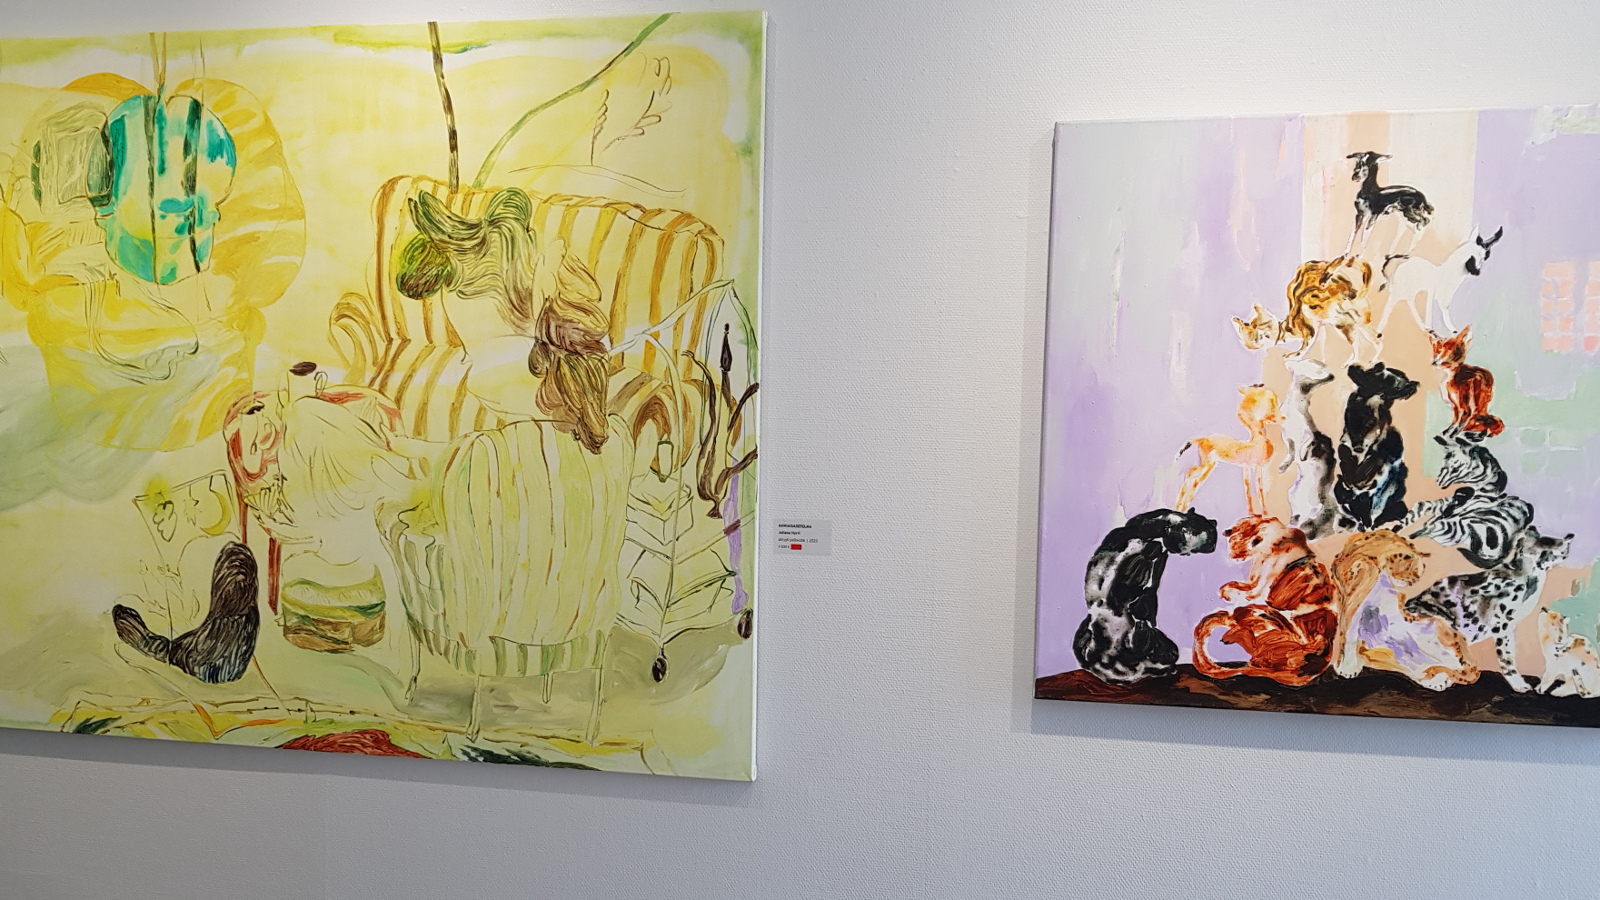 Kuvassa on Juliana Hurrin kaksi teosta, josita vasemmalla on suurempi keltainen ja siinä on erilaisia hahmoja.  Oikealla on punertava sävyinen teos ja siinä on pyramidimaisesti erilaisia esineitä päällekkäin.